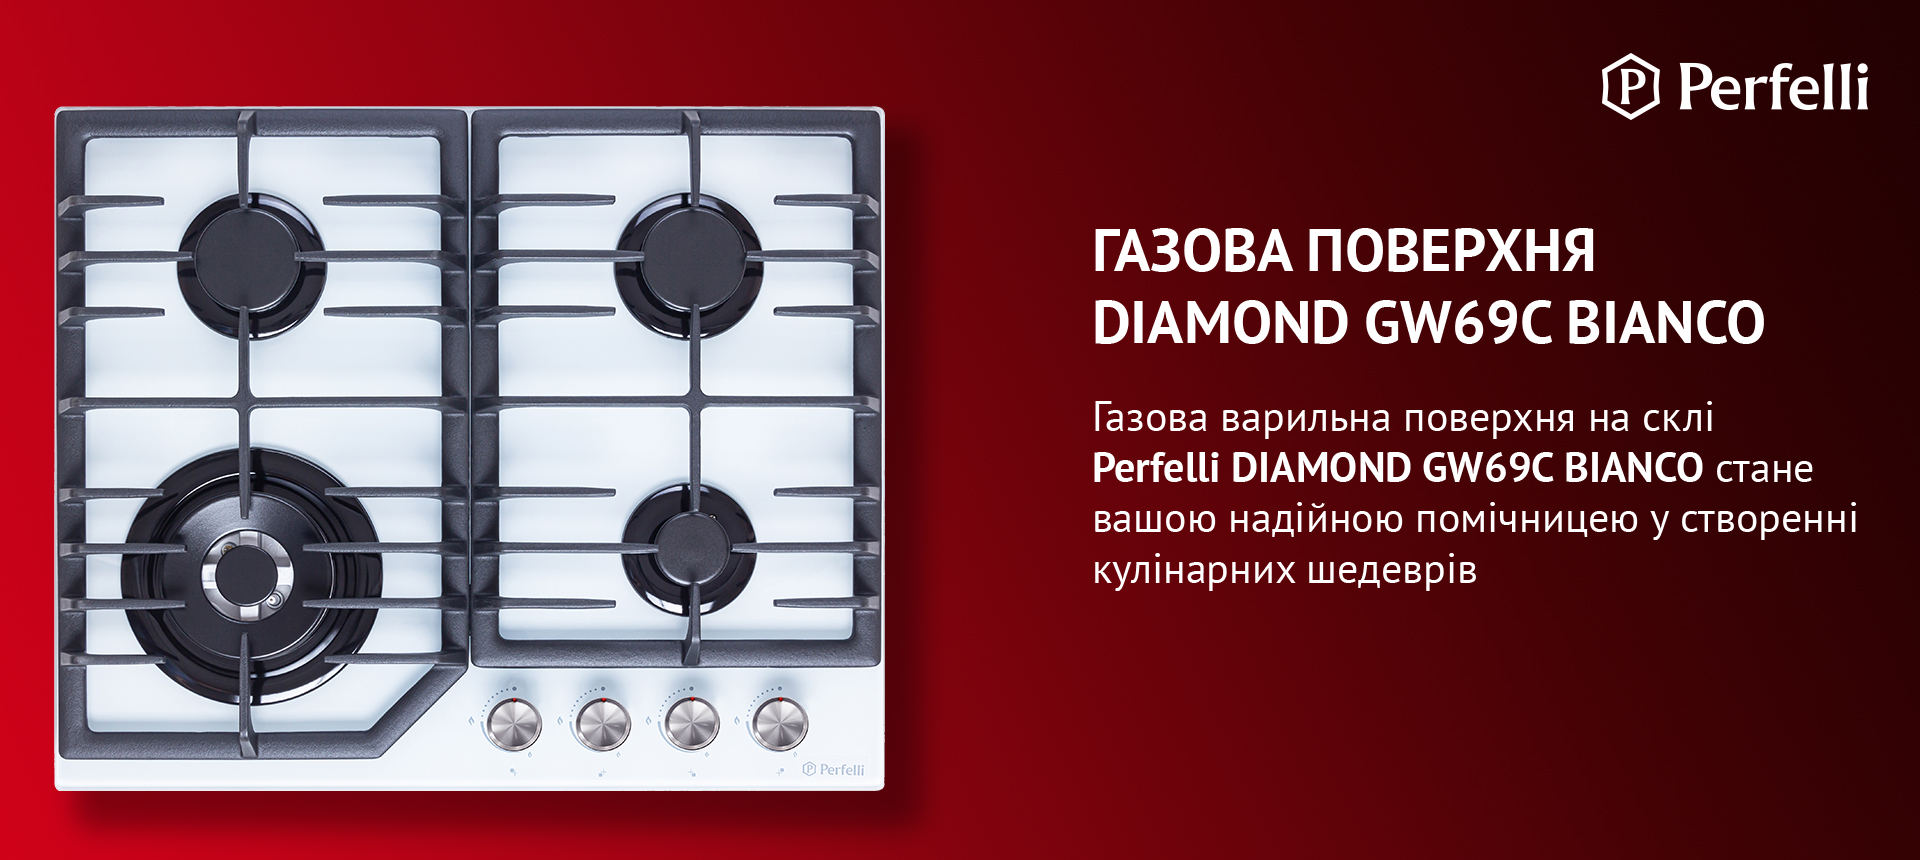 Варильна поверхня на склі Perfelli DIAMOND GW69C BIANCO стане вашою надійною помічницею у створенні кулінарних шедеврів